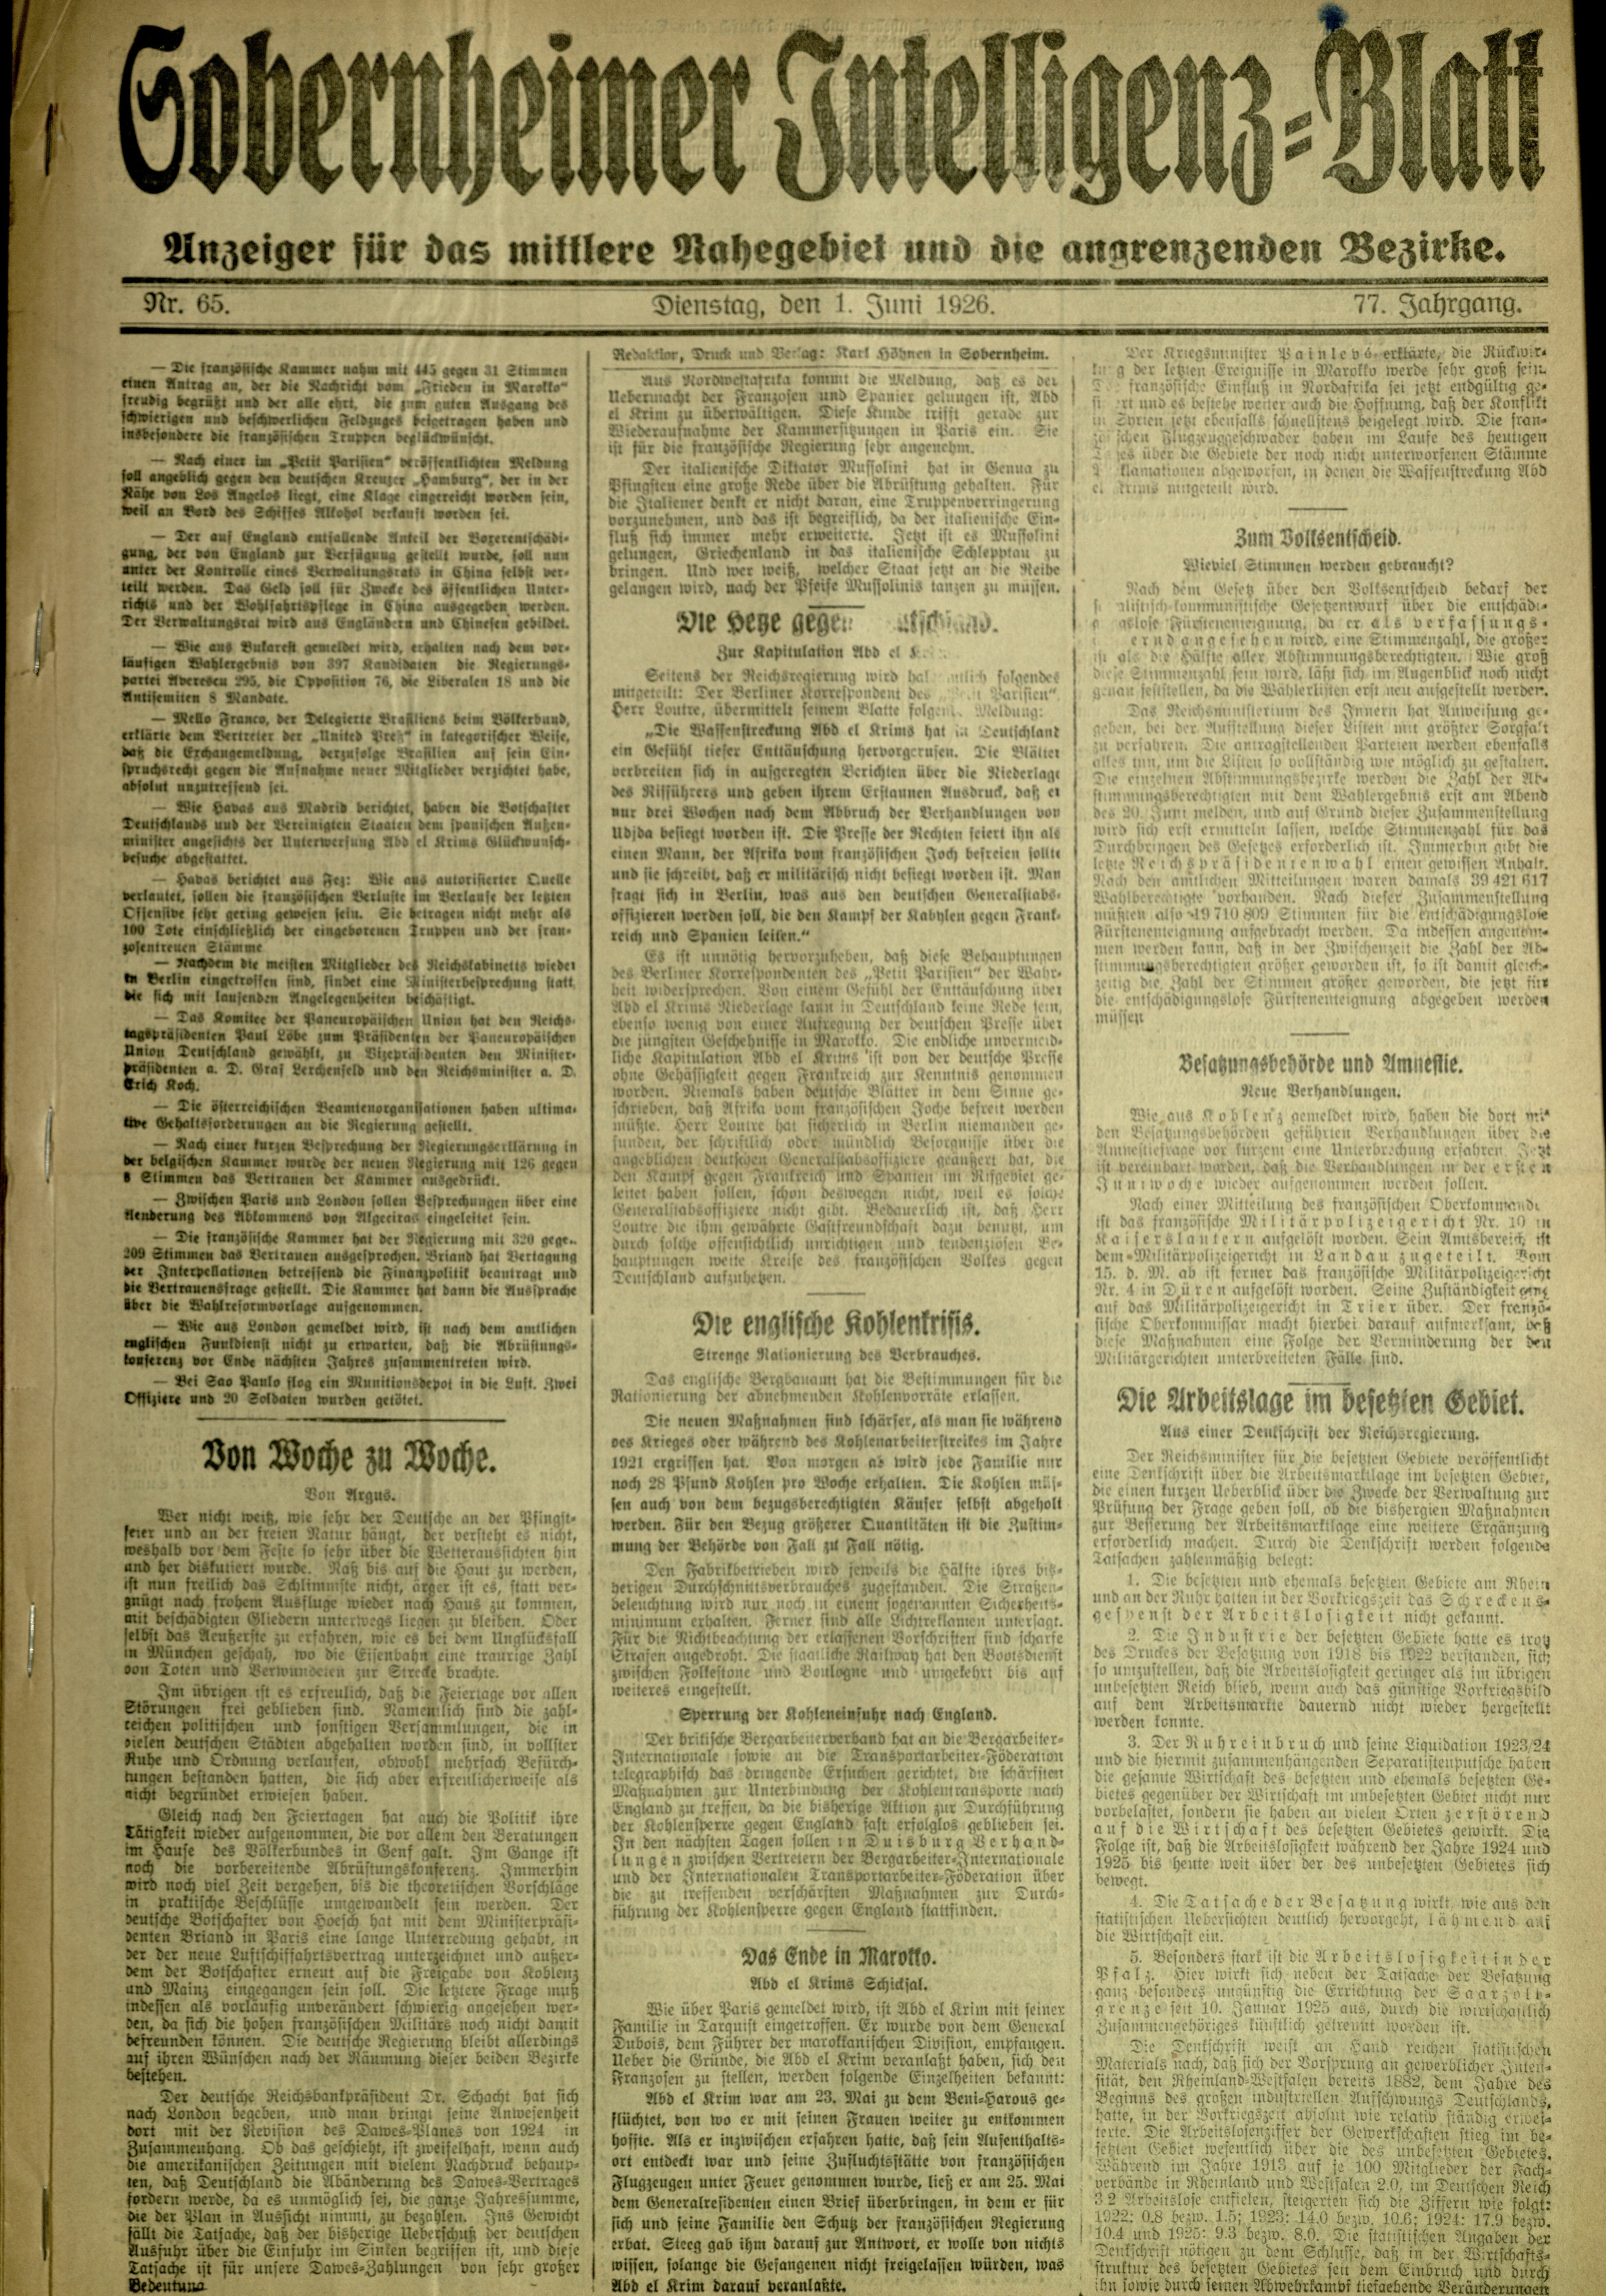 Zeitung: Sobernheimer Intelligenzblatt; Juni 1926, Jg. 73 Nr. 65 (Heimatmuseum Bad Sobernheim CC BY-NC-SA)